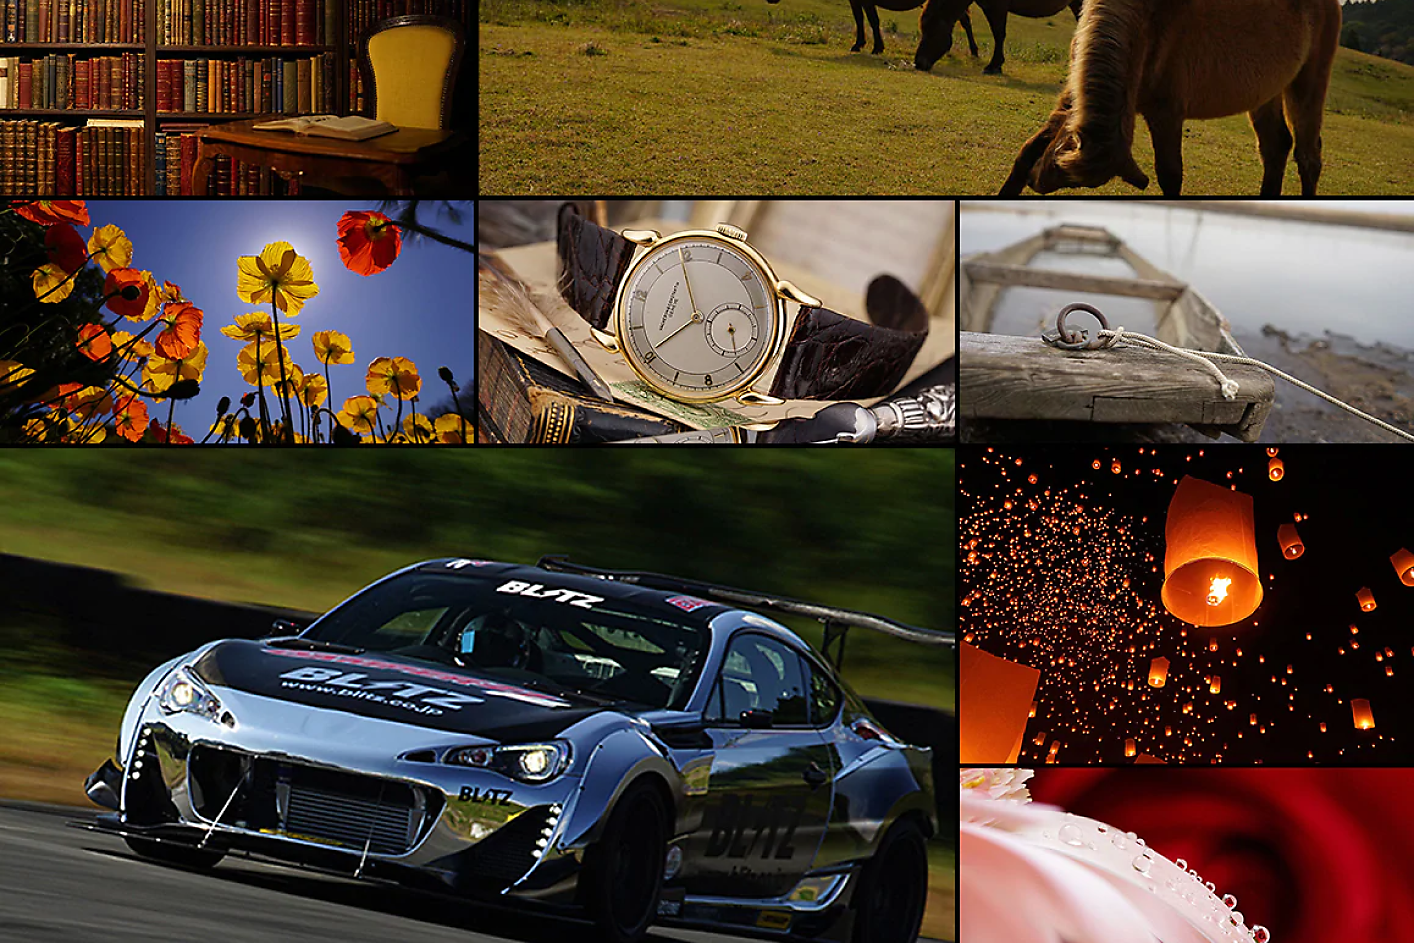 Collage coloré de huit images, dont une voiture de course, un cheval, une montre et des fleurs